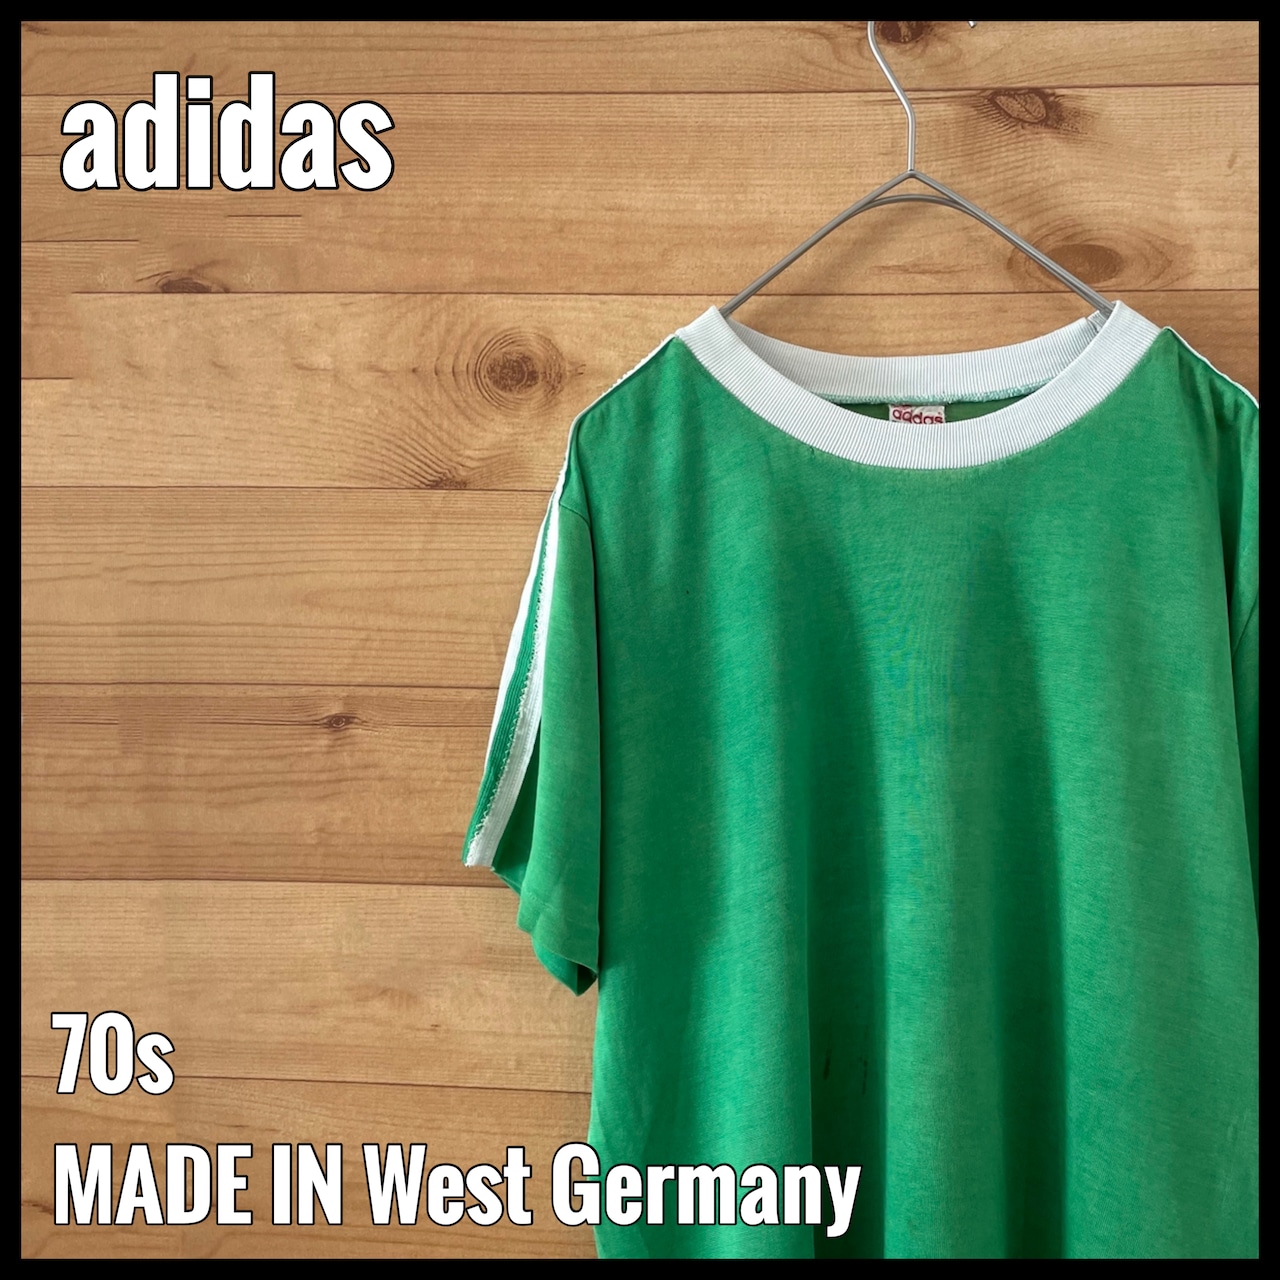 【adidas】70s 西ドイツ製  ビンテージ Tシャツ アディダス ビスコース スリーストライプ 古着